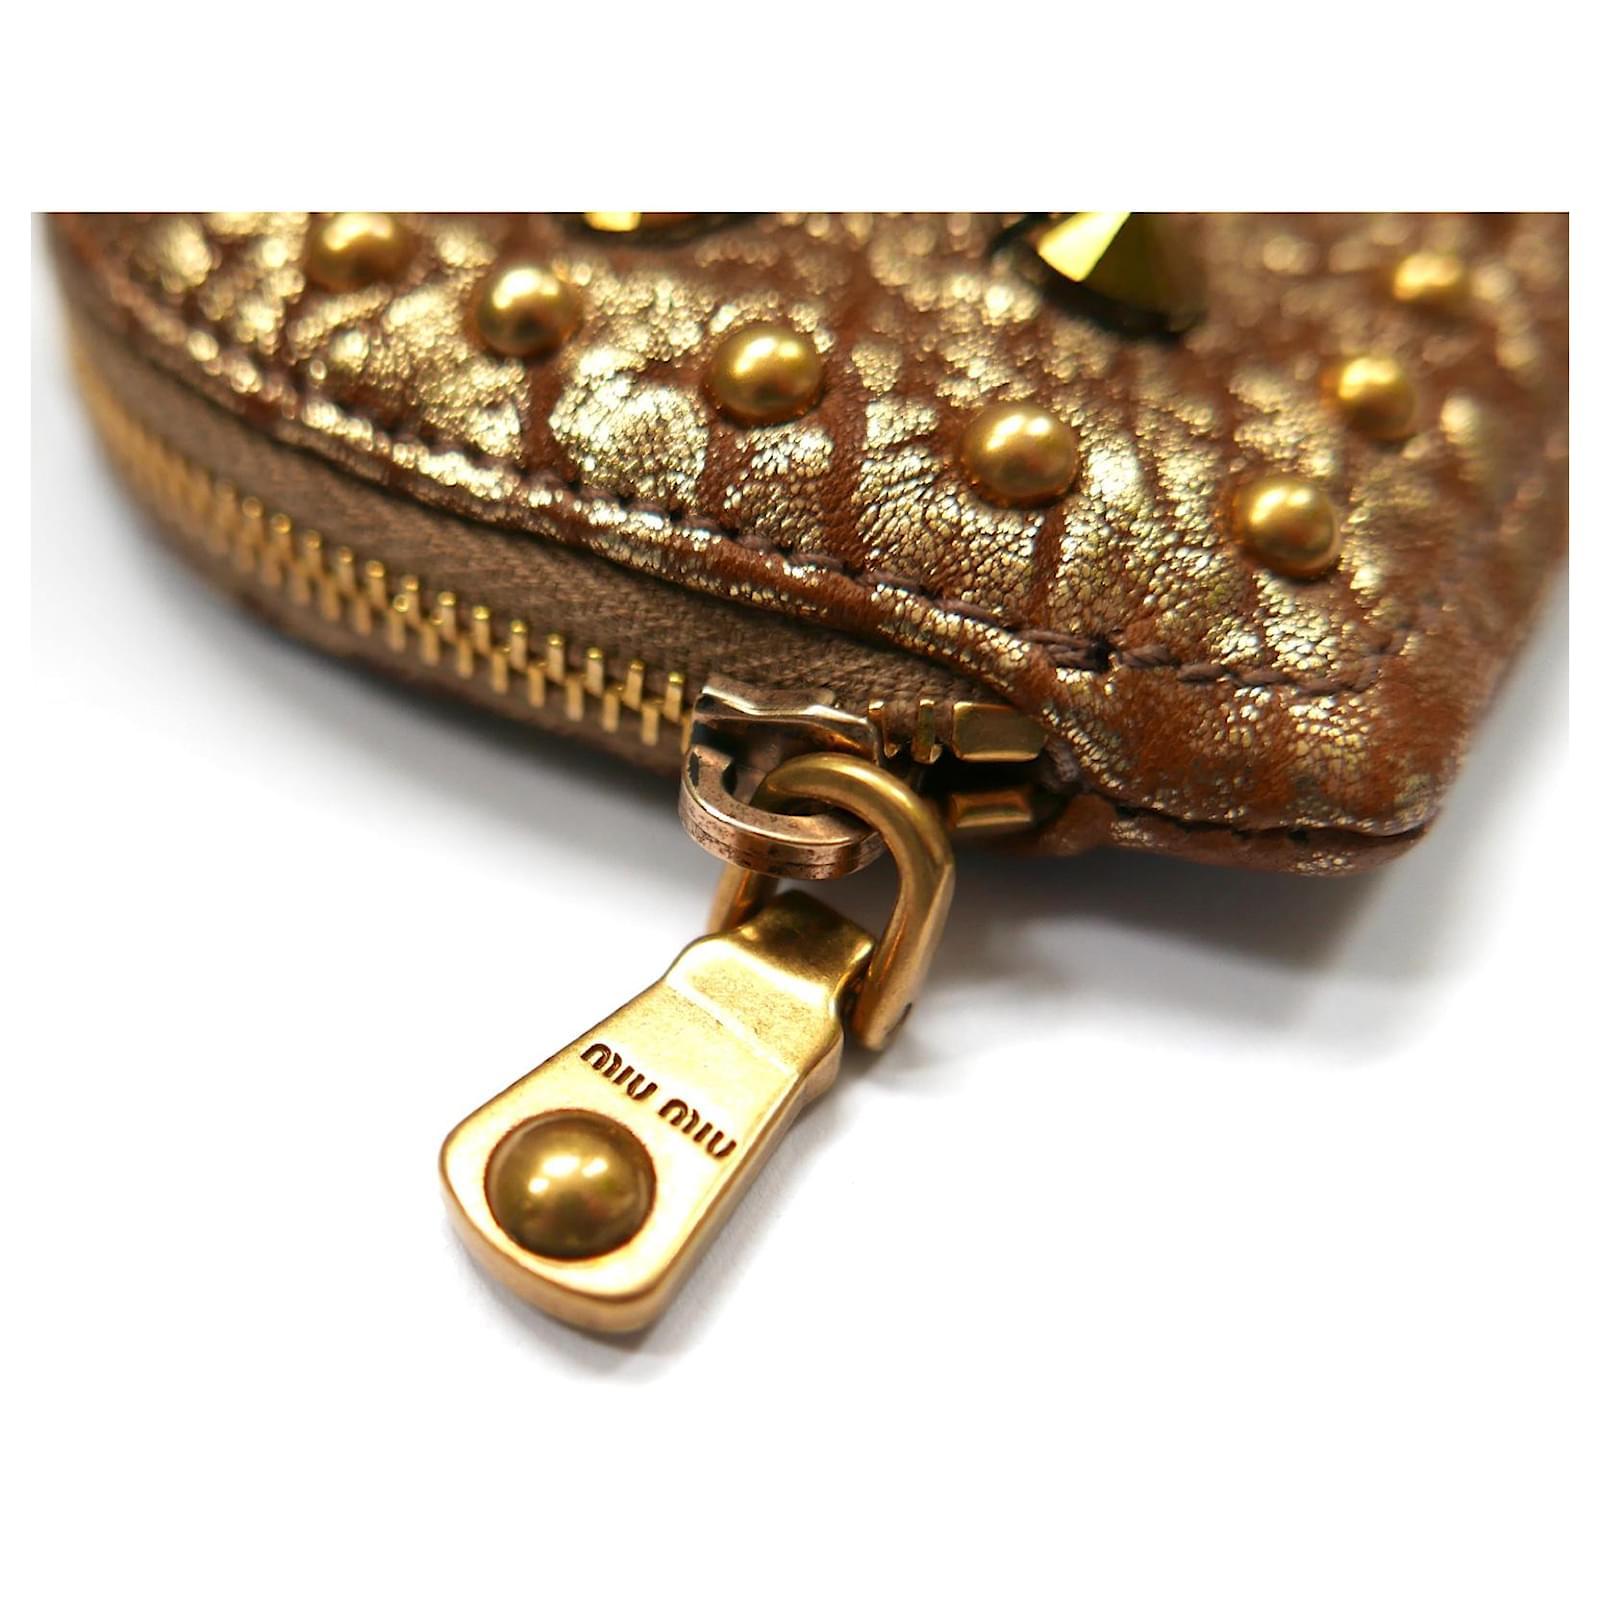 Bezaubernde Miu Miu herzförmige Geldbörse - neu mit Net-A-Porter Tag. Aus goldfarbenem, strukturiertem Leder mit Nietenbesatz auf der Vorderseite und klobigem Clip, Schlüsselring und Anhänger. Gefüttert mit rosa Twill. Maße ca. 4